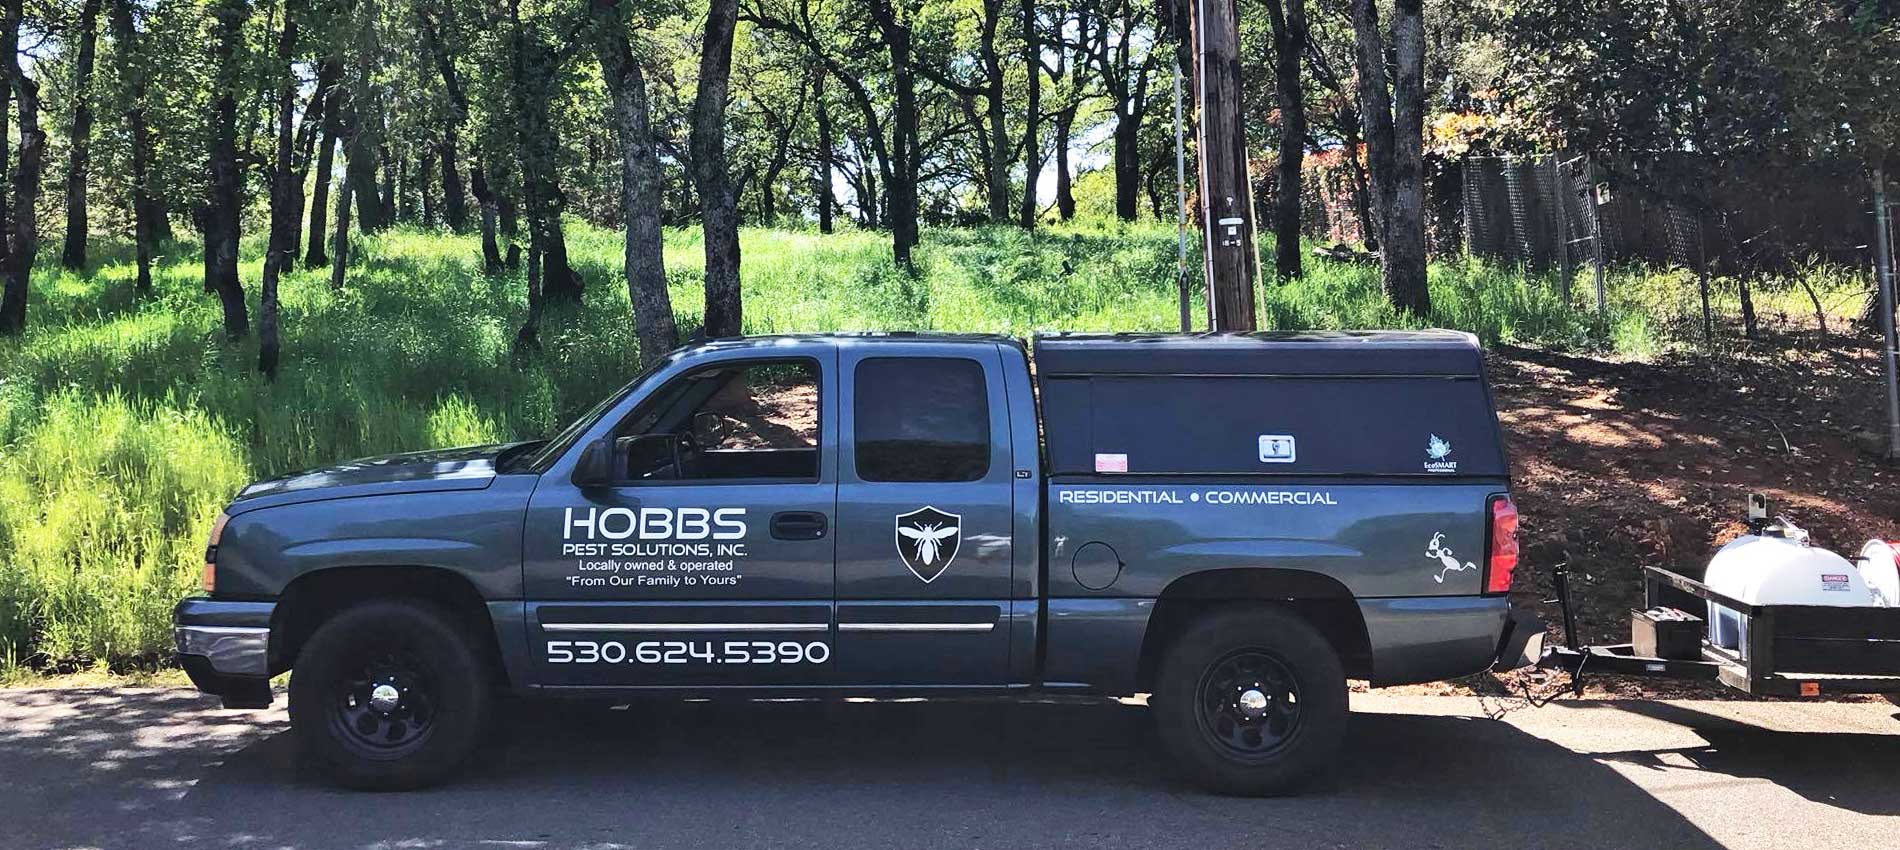 Hobbs pest control van